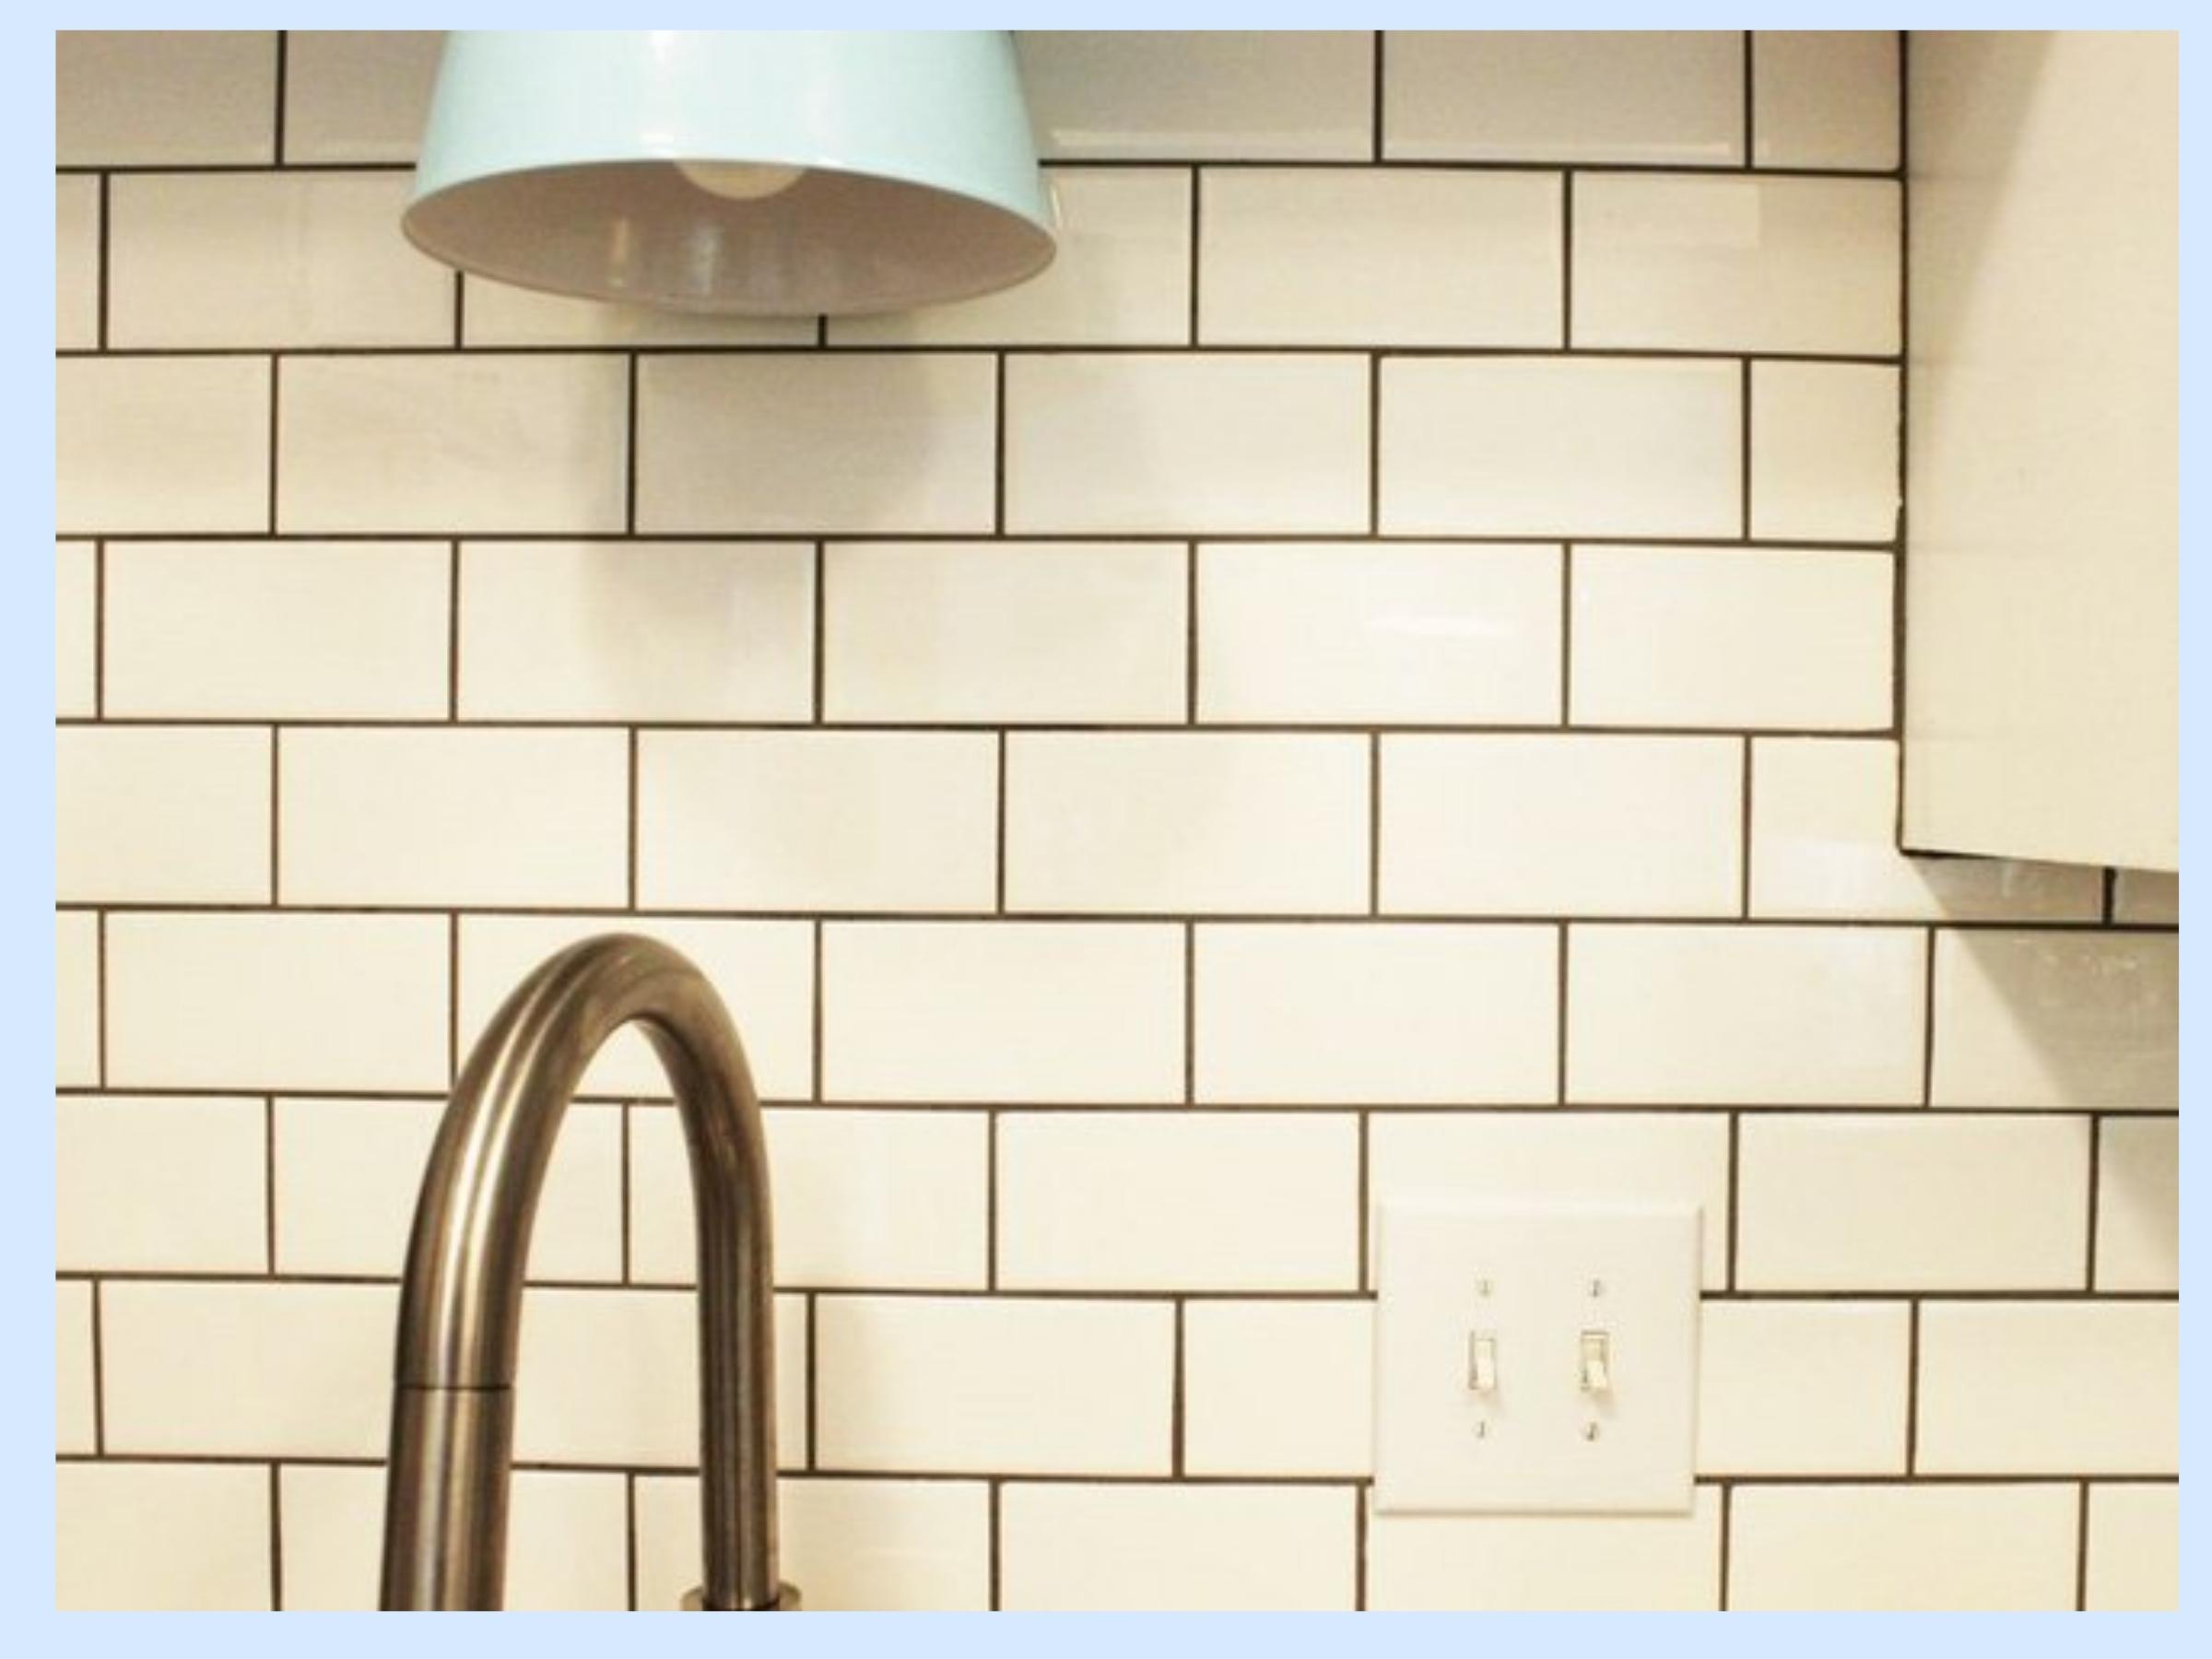 Ốp gạch tại tường bếp dễ bám bẩn khó vệ sinh do đặc điểm từng loại gạch